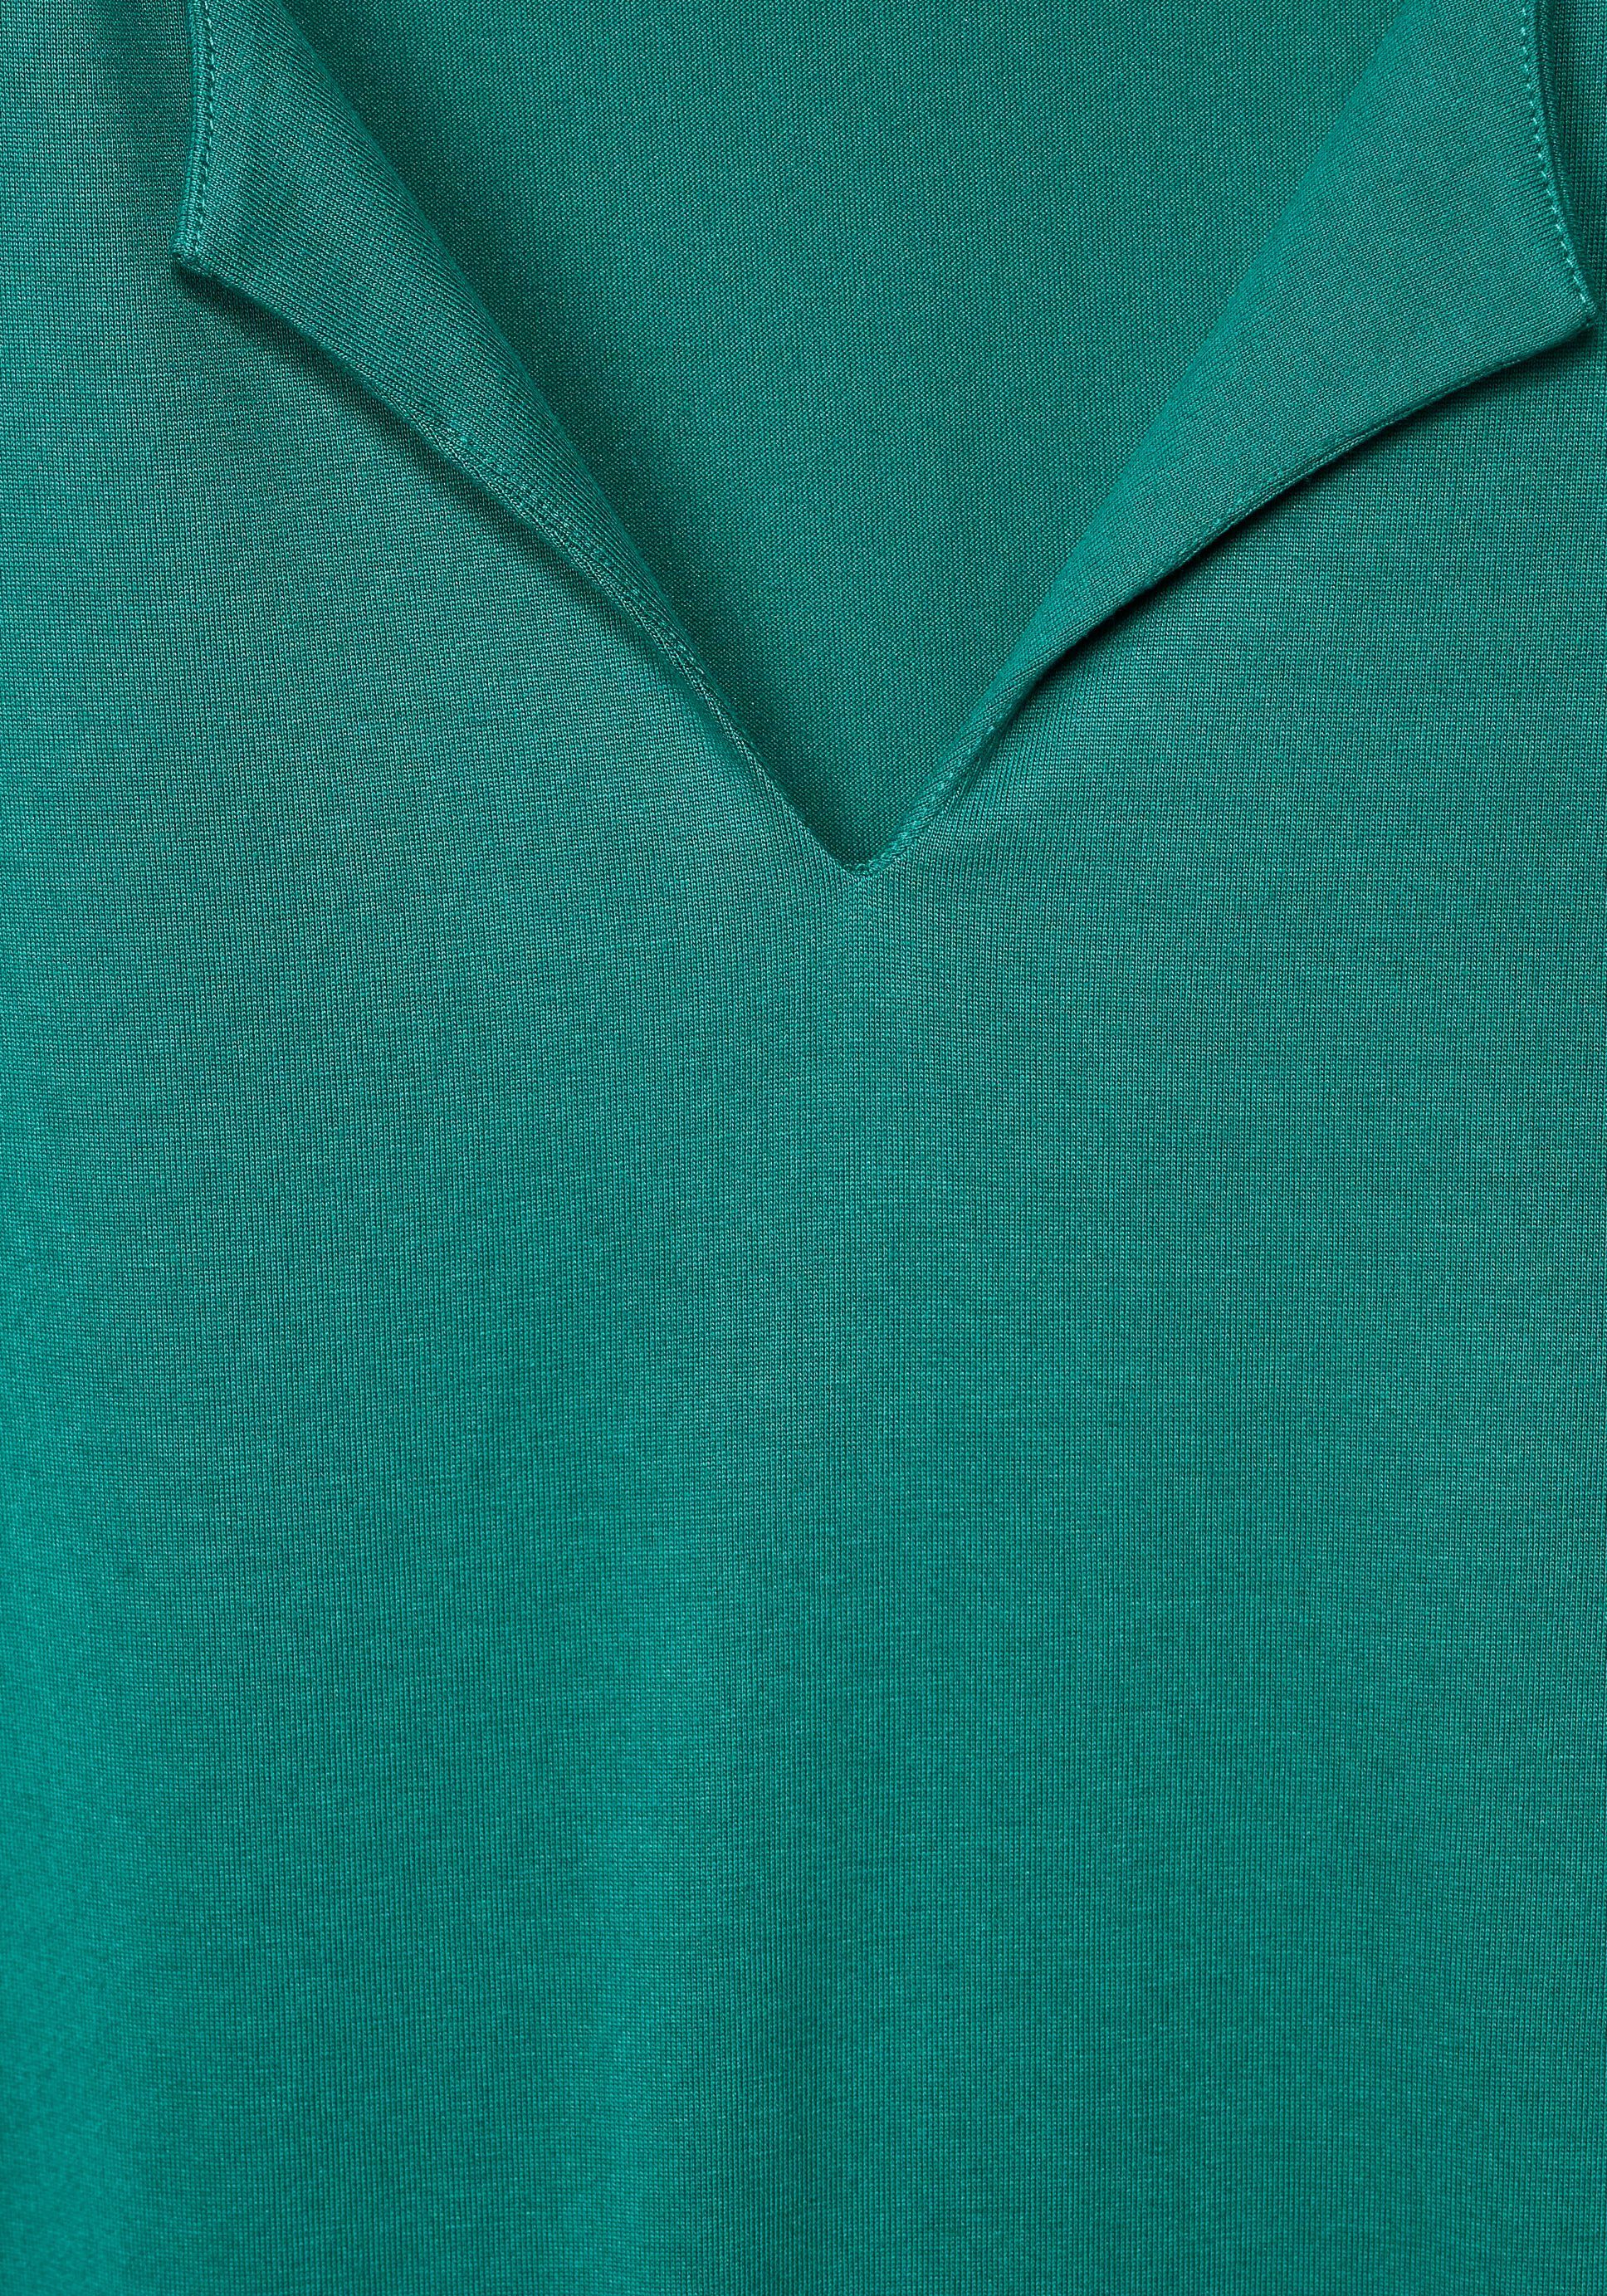 Shirttop im ONE STREET Seidenlook green